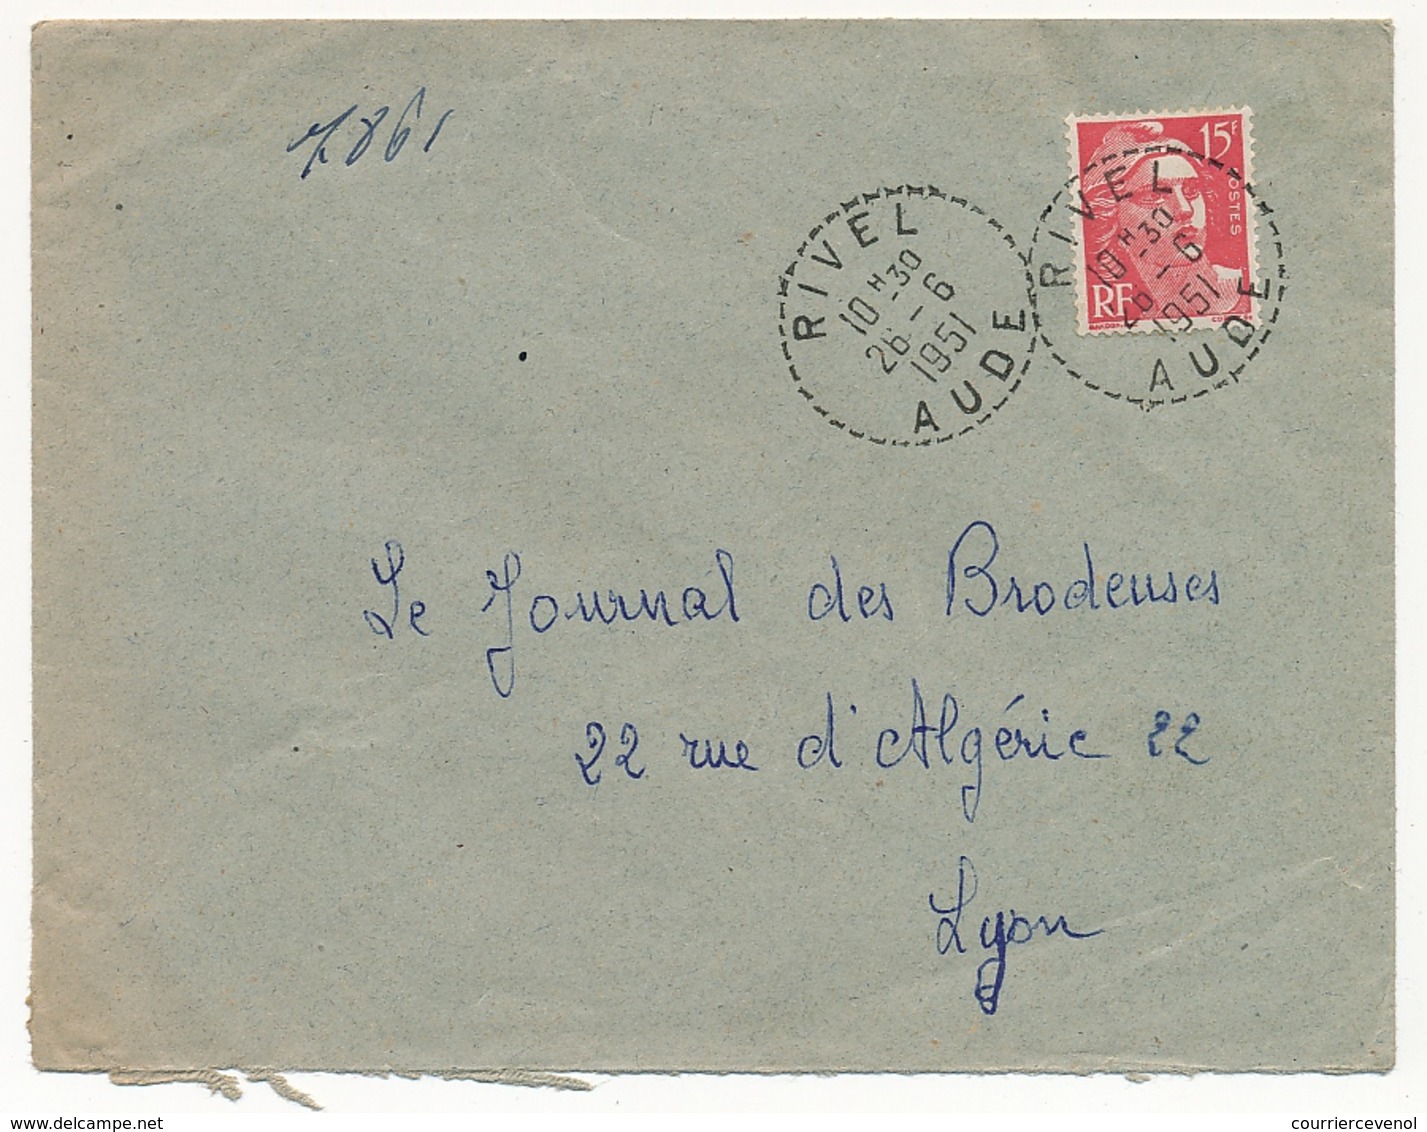 FRANCE - Env. Affr 15f Gandon - Cachet Tireté "RIVEL AUDE 1951" - 1945-54 Marianne De Gandon